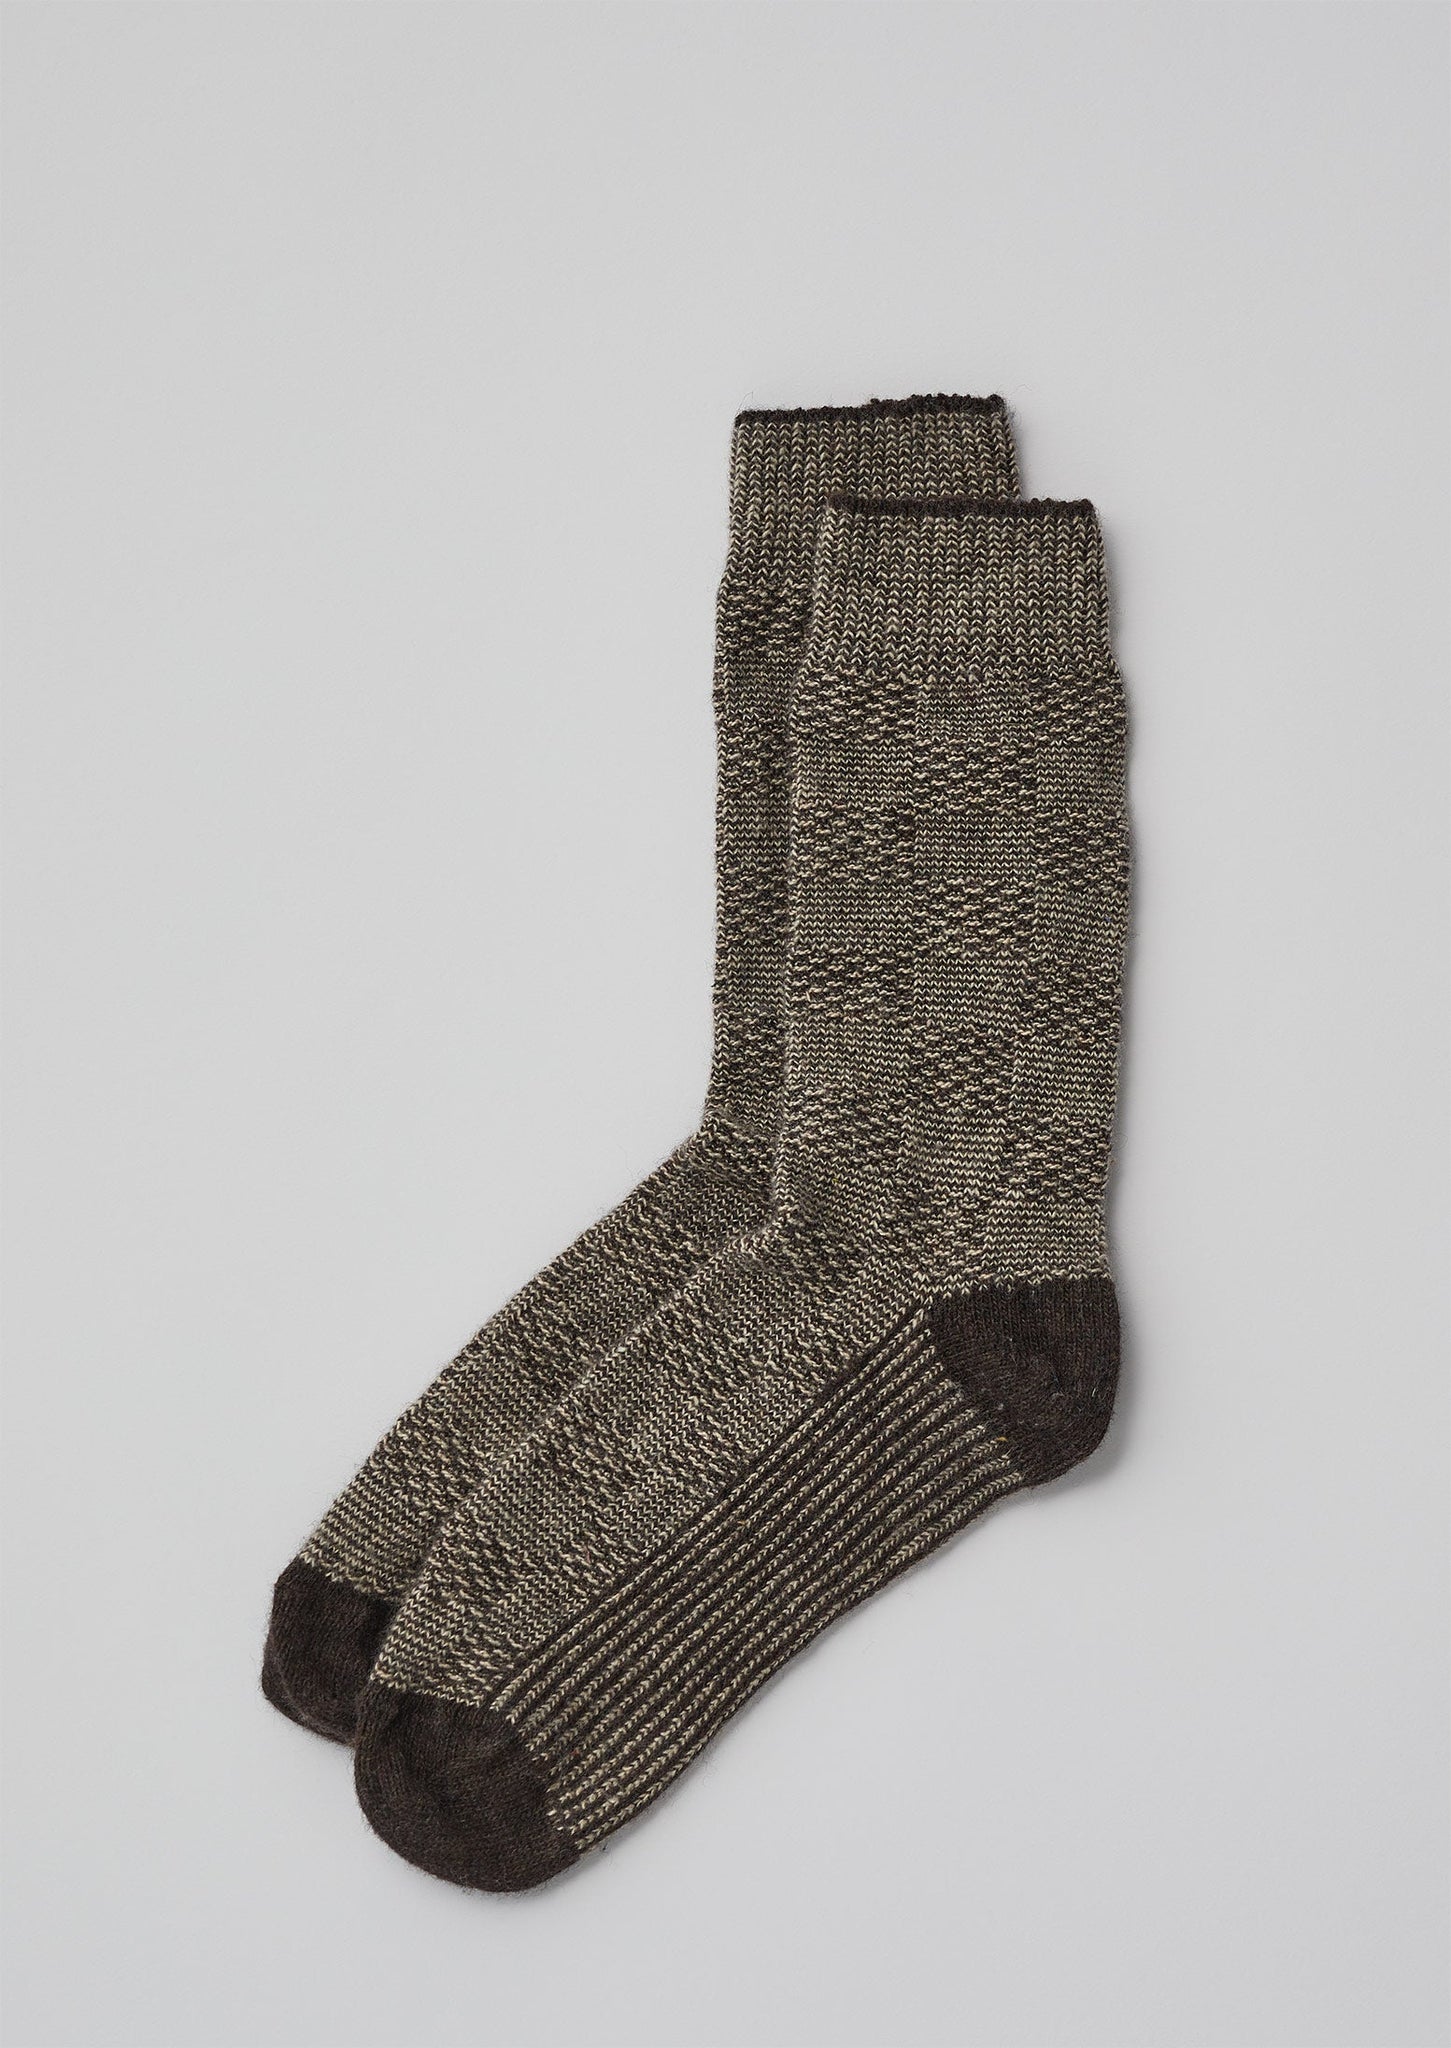 Grid Stitch Textured Marl Socks | Bark/Ecru